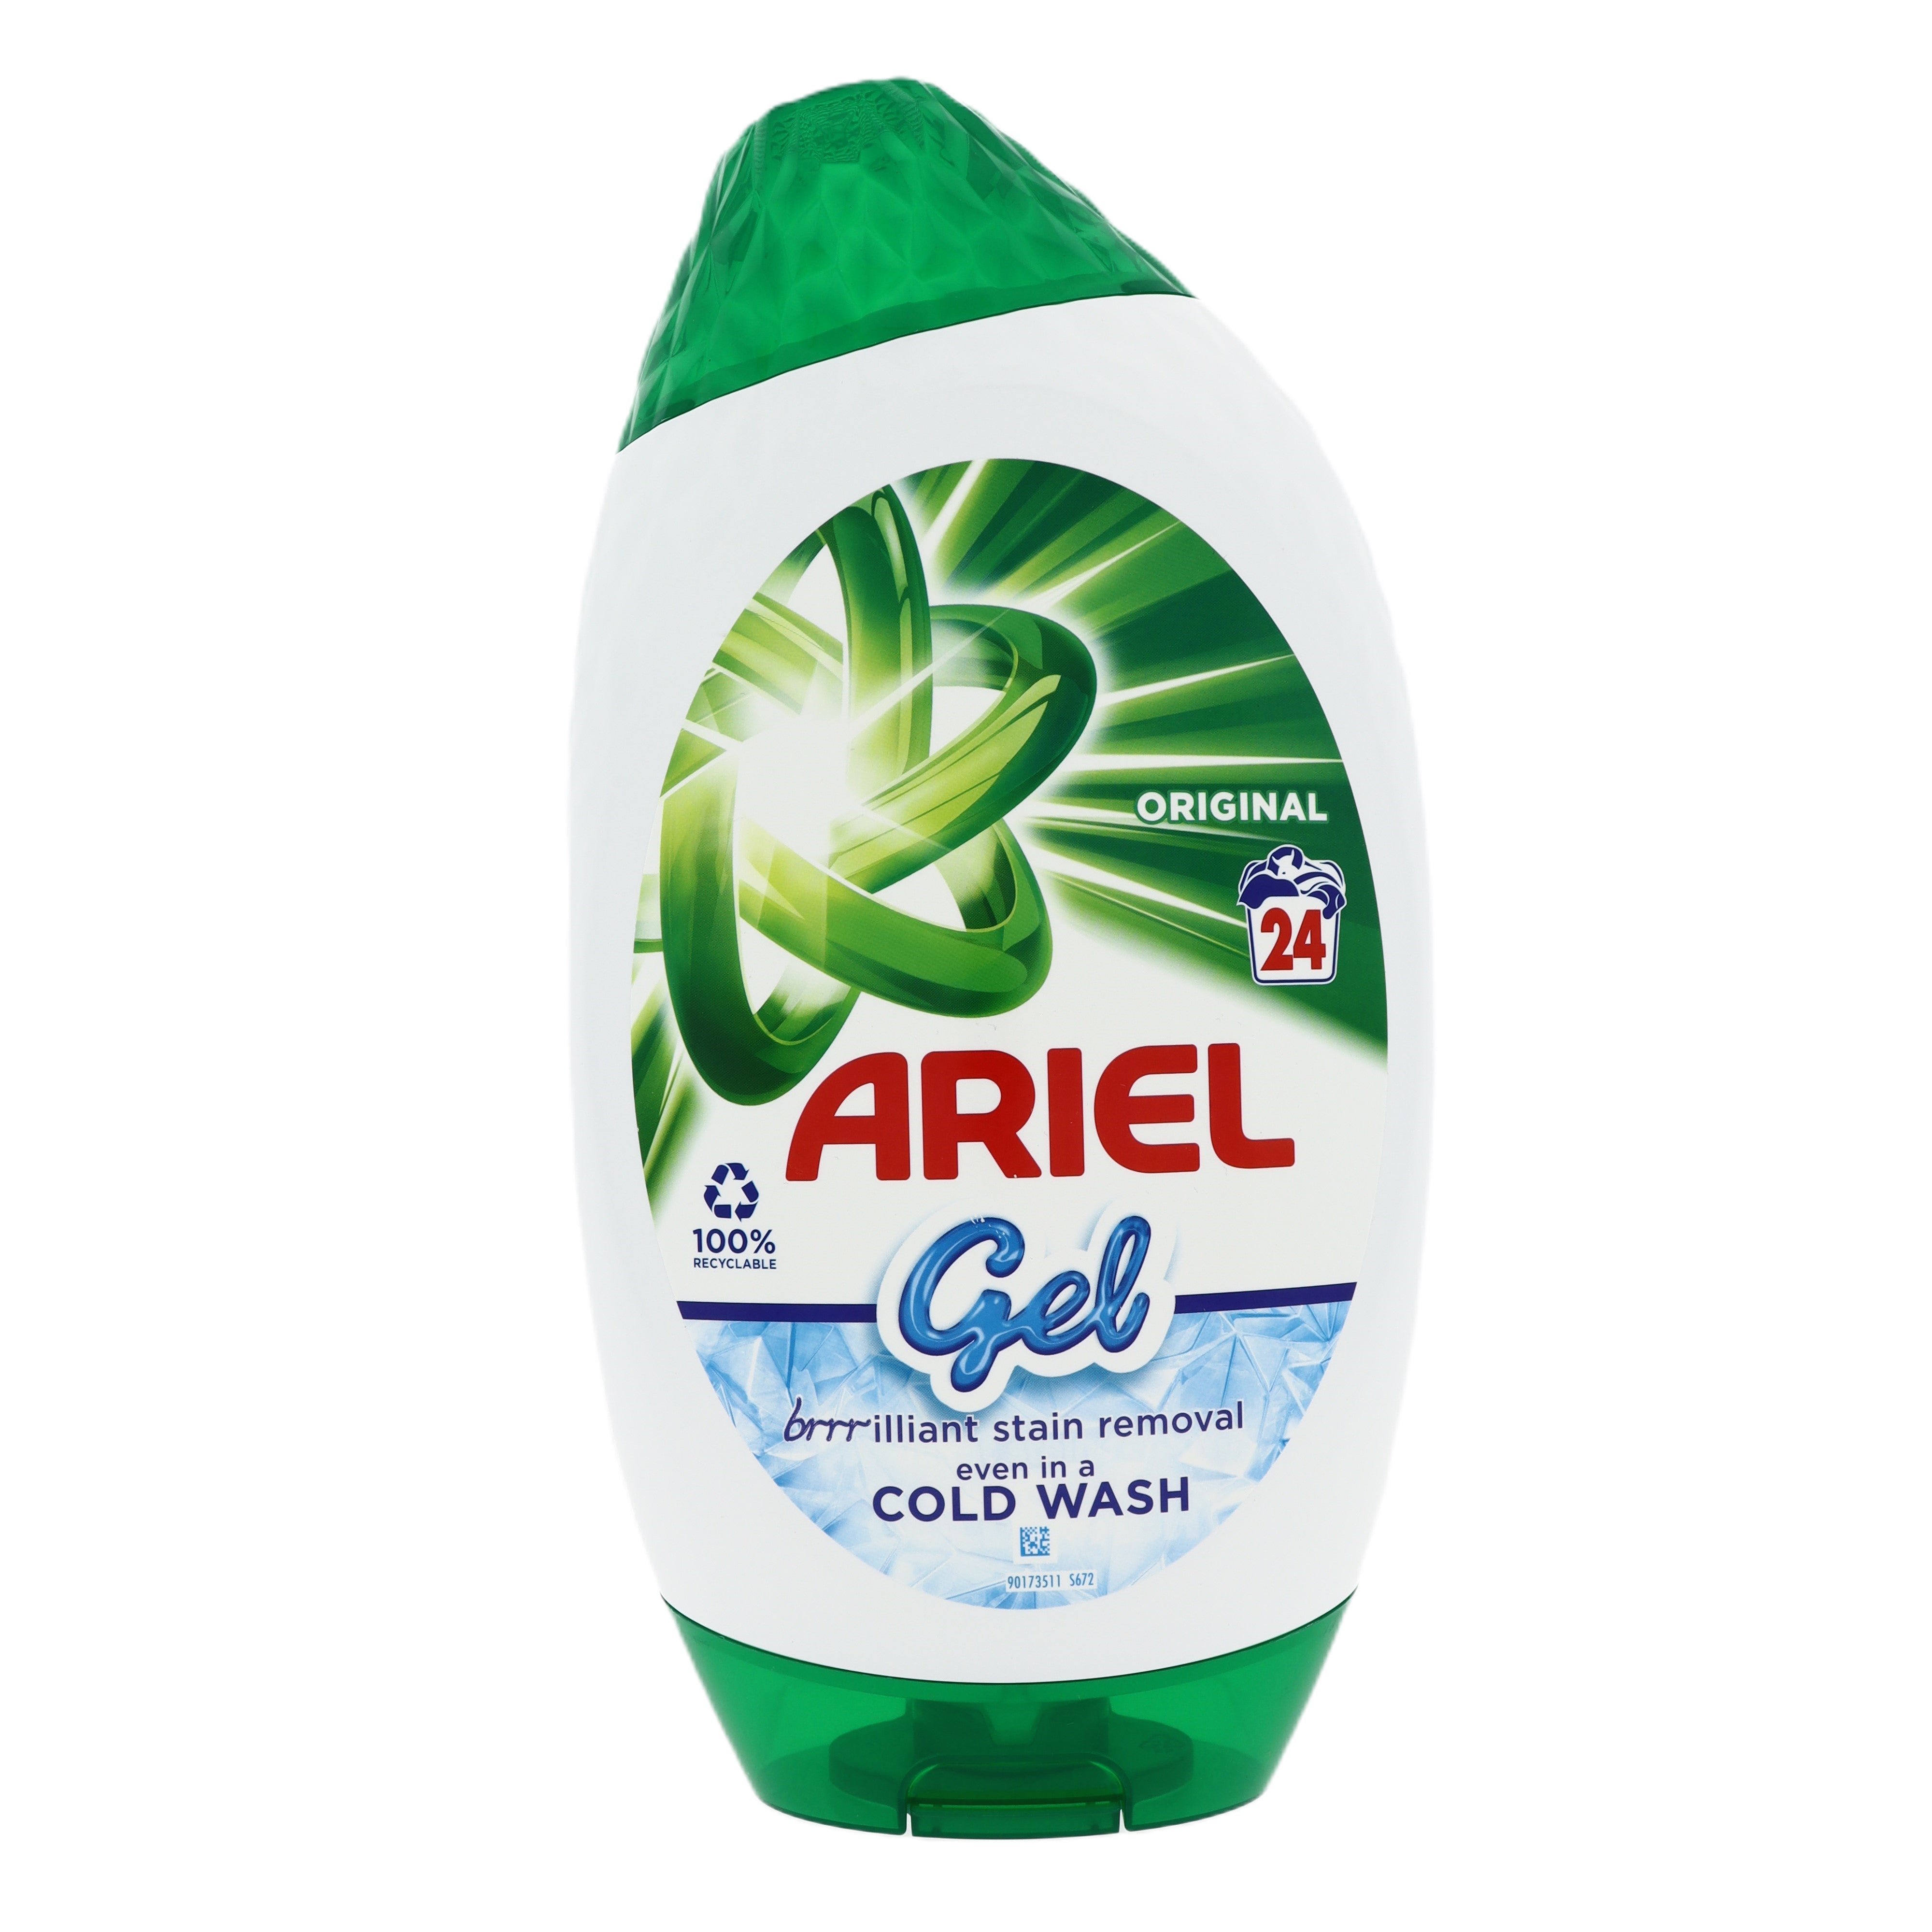 Ariel Original vloeibaar wasmiddel Gel 840ML 24 wasbeurten